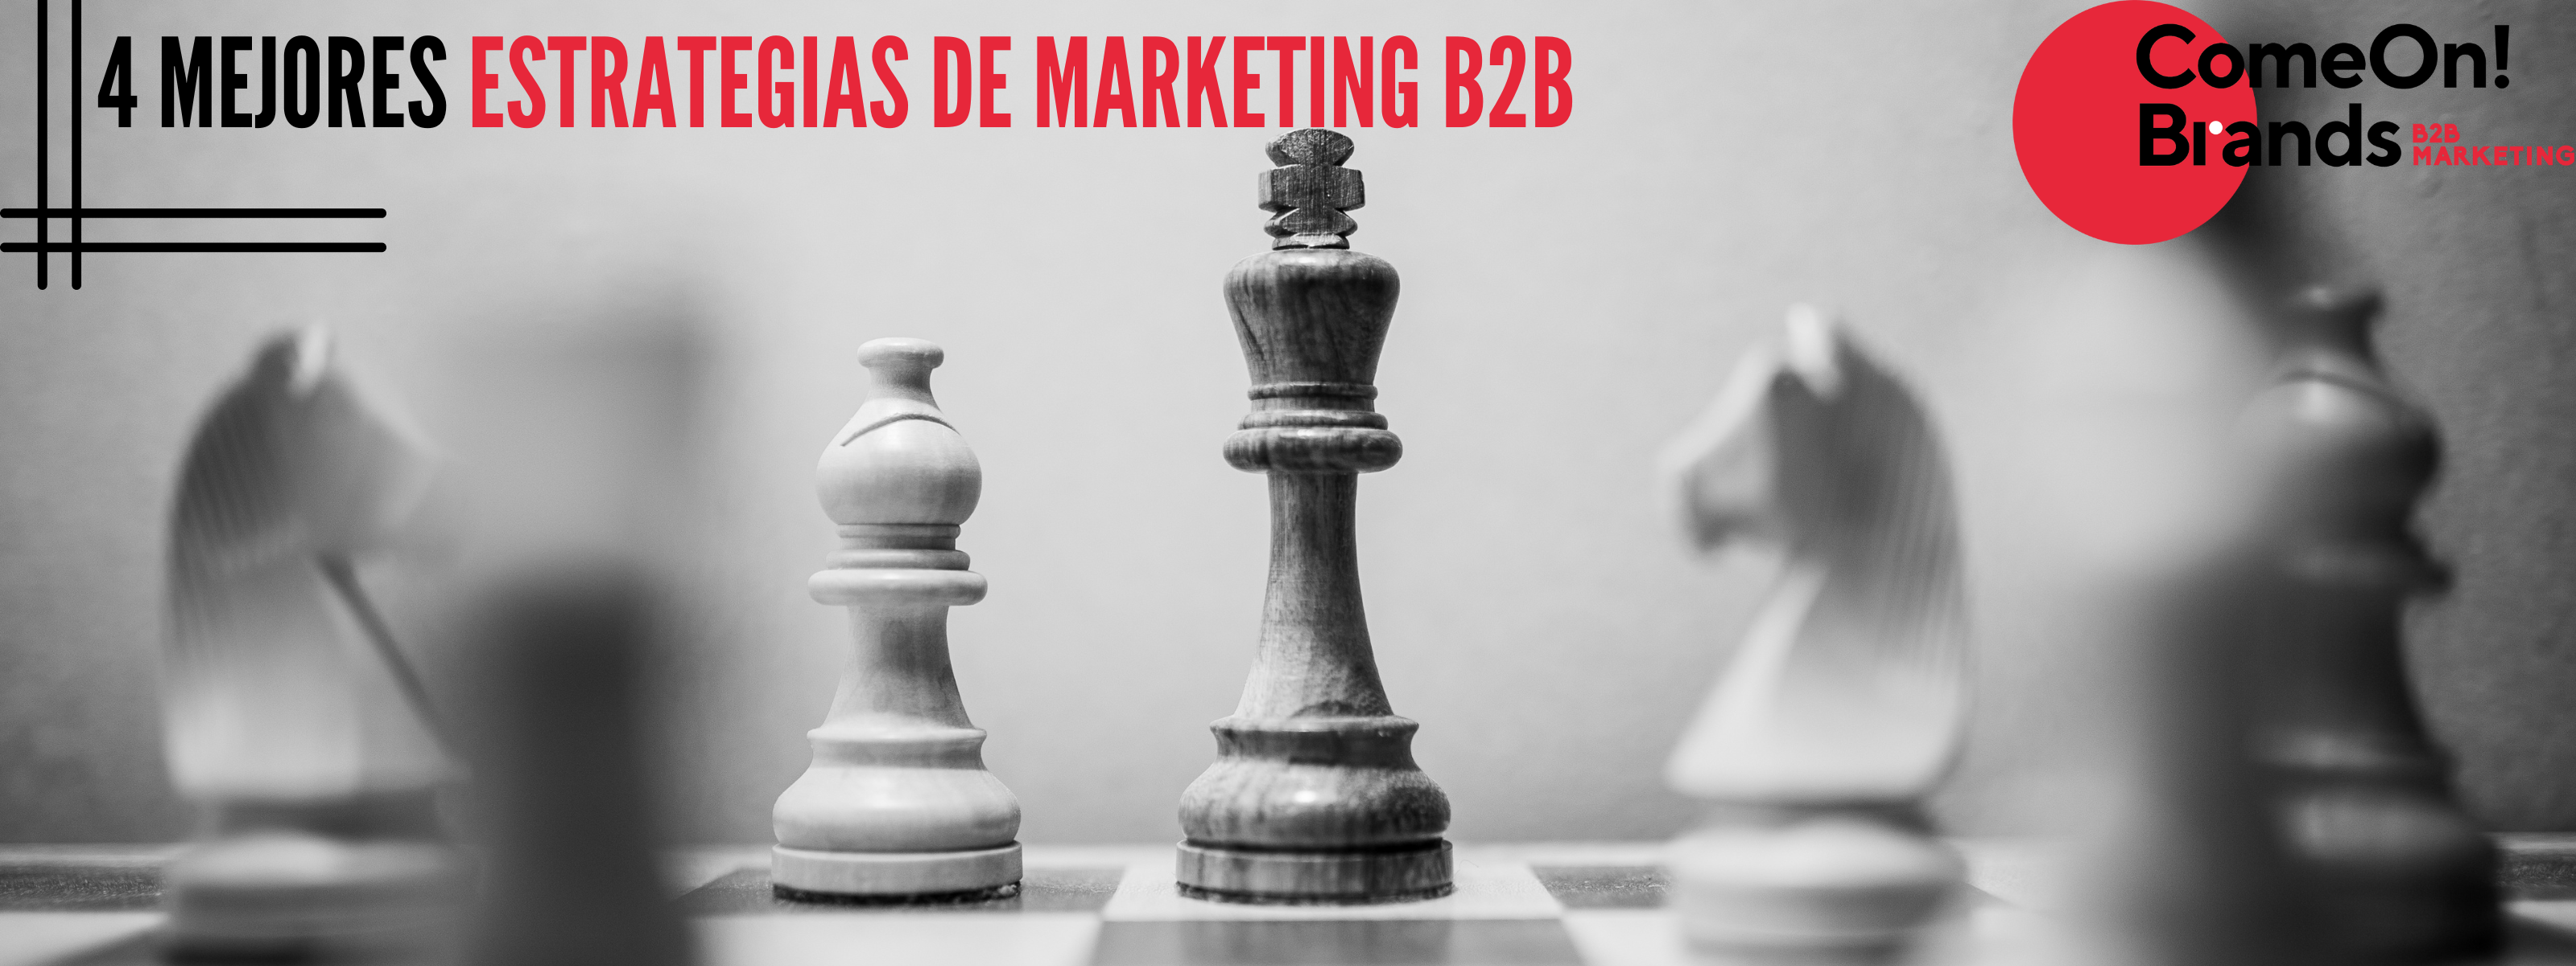 4 mejores estrategias de marketing b2b